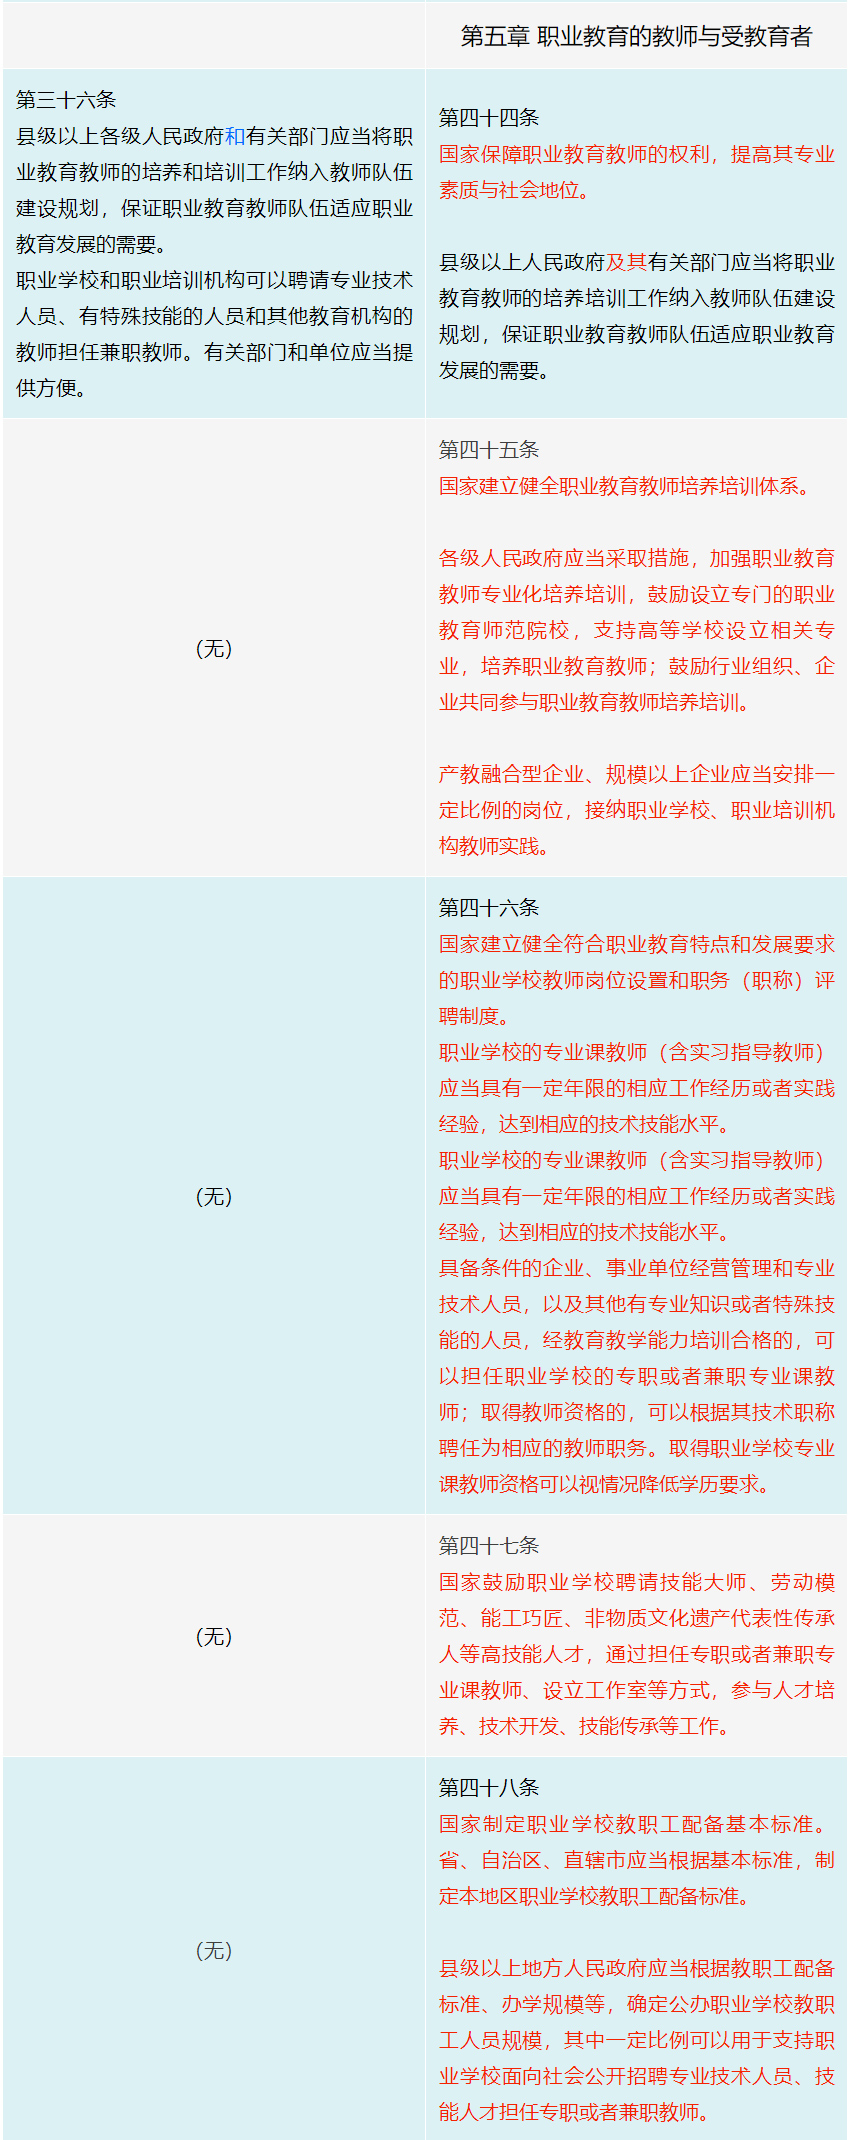 《中华人民共和国职业教育法》修订前后变化对照表（必读）